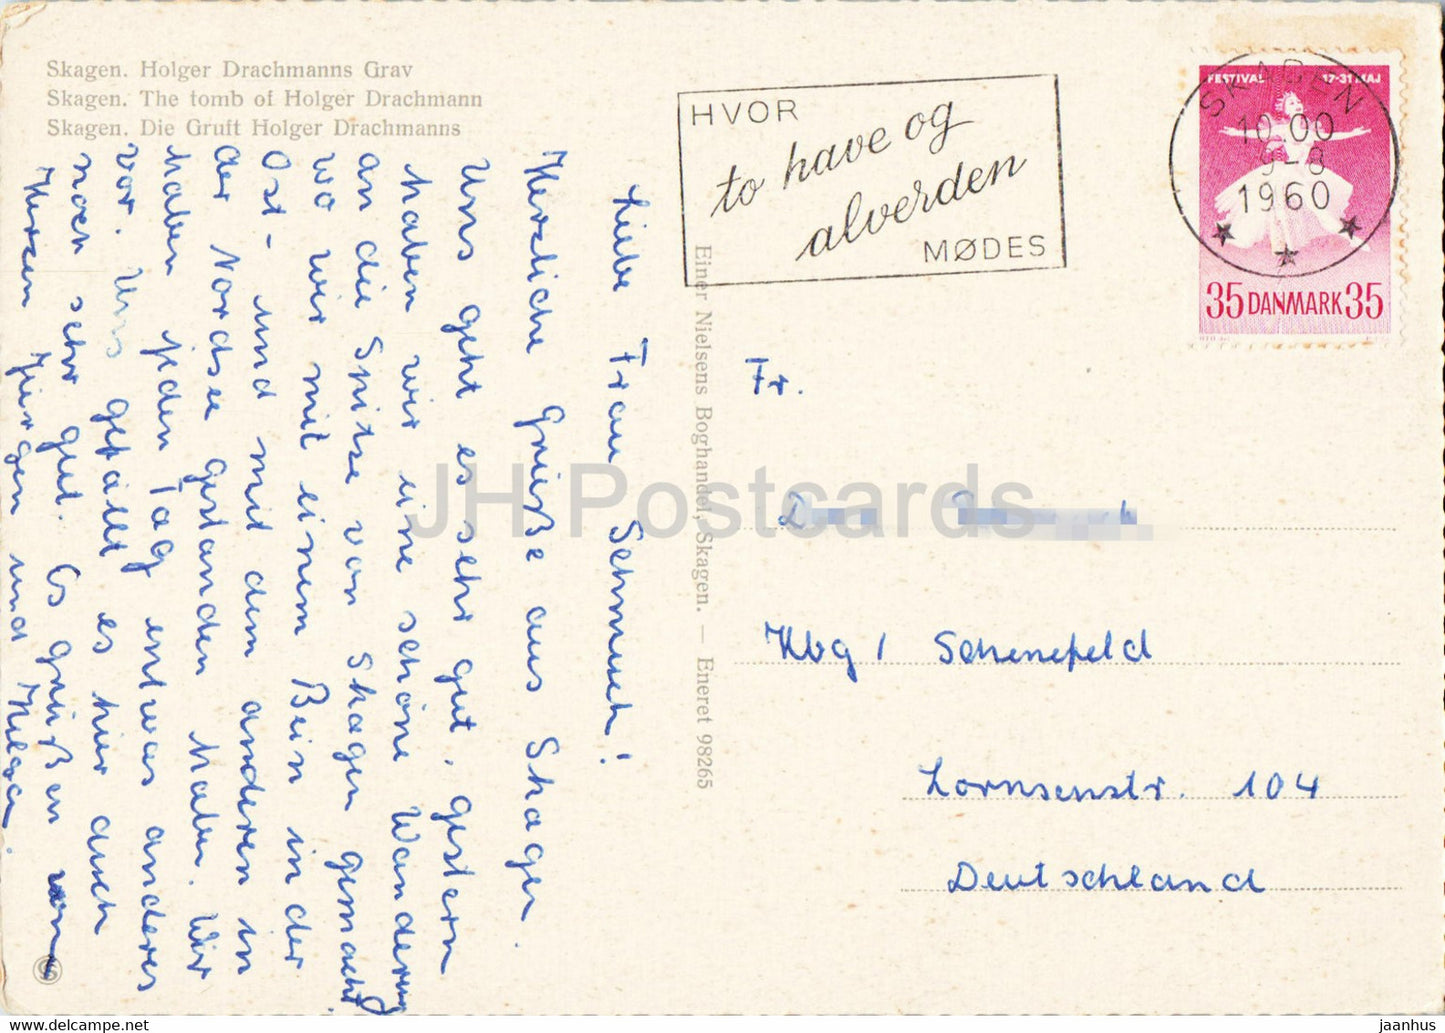 Skagen - The Tomb of Holger Drachmann - old postcard - 1960 - Denmark - used